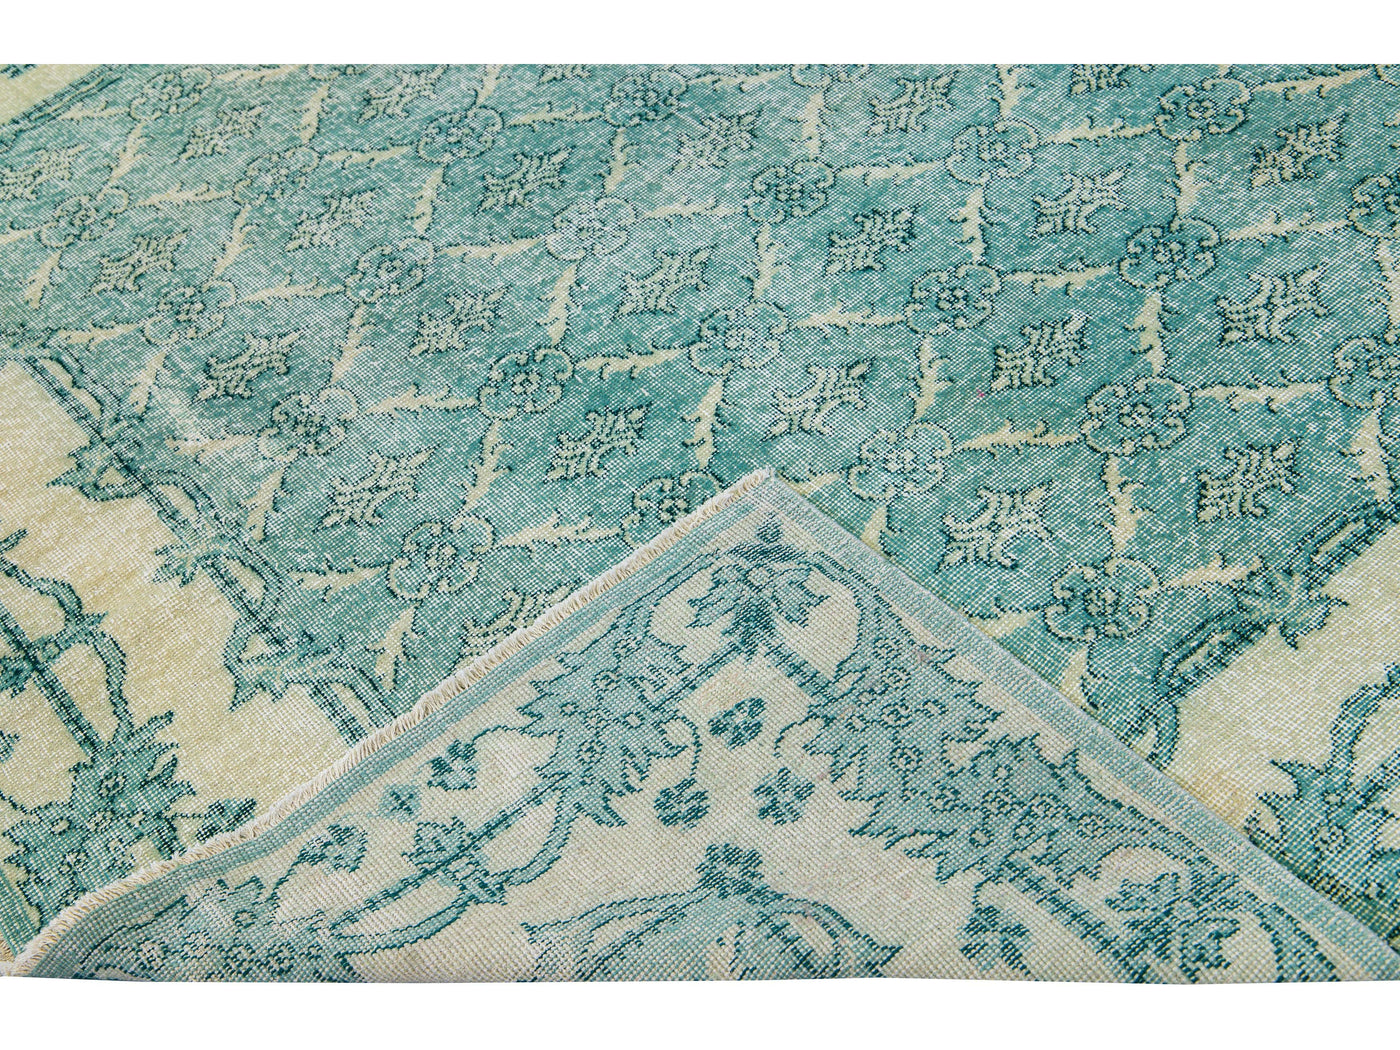 Vintage Turkish Deco Handmade Floral Pattern Teal Wool Rug